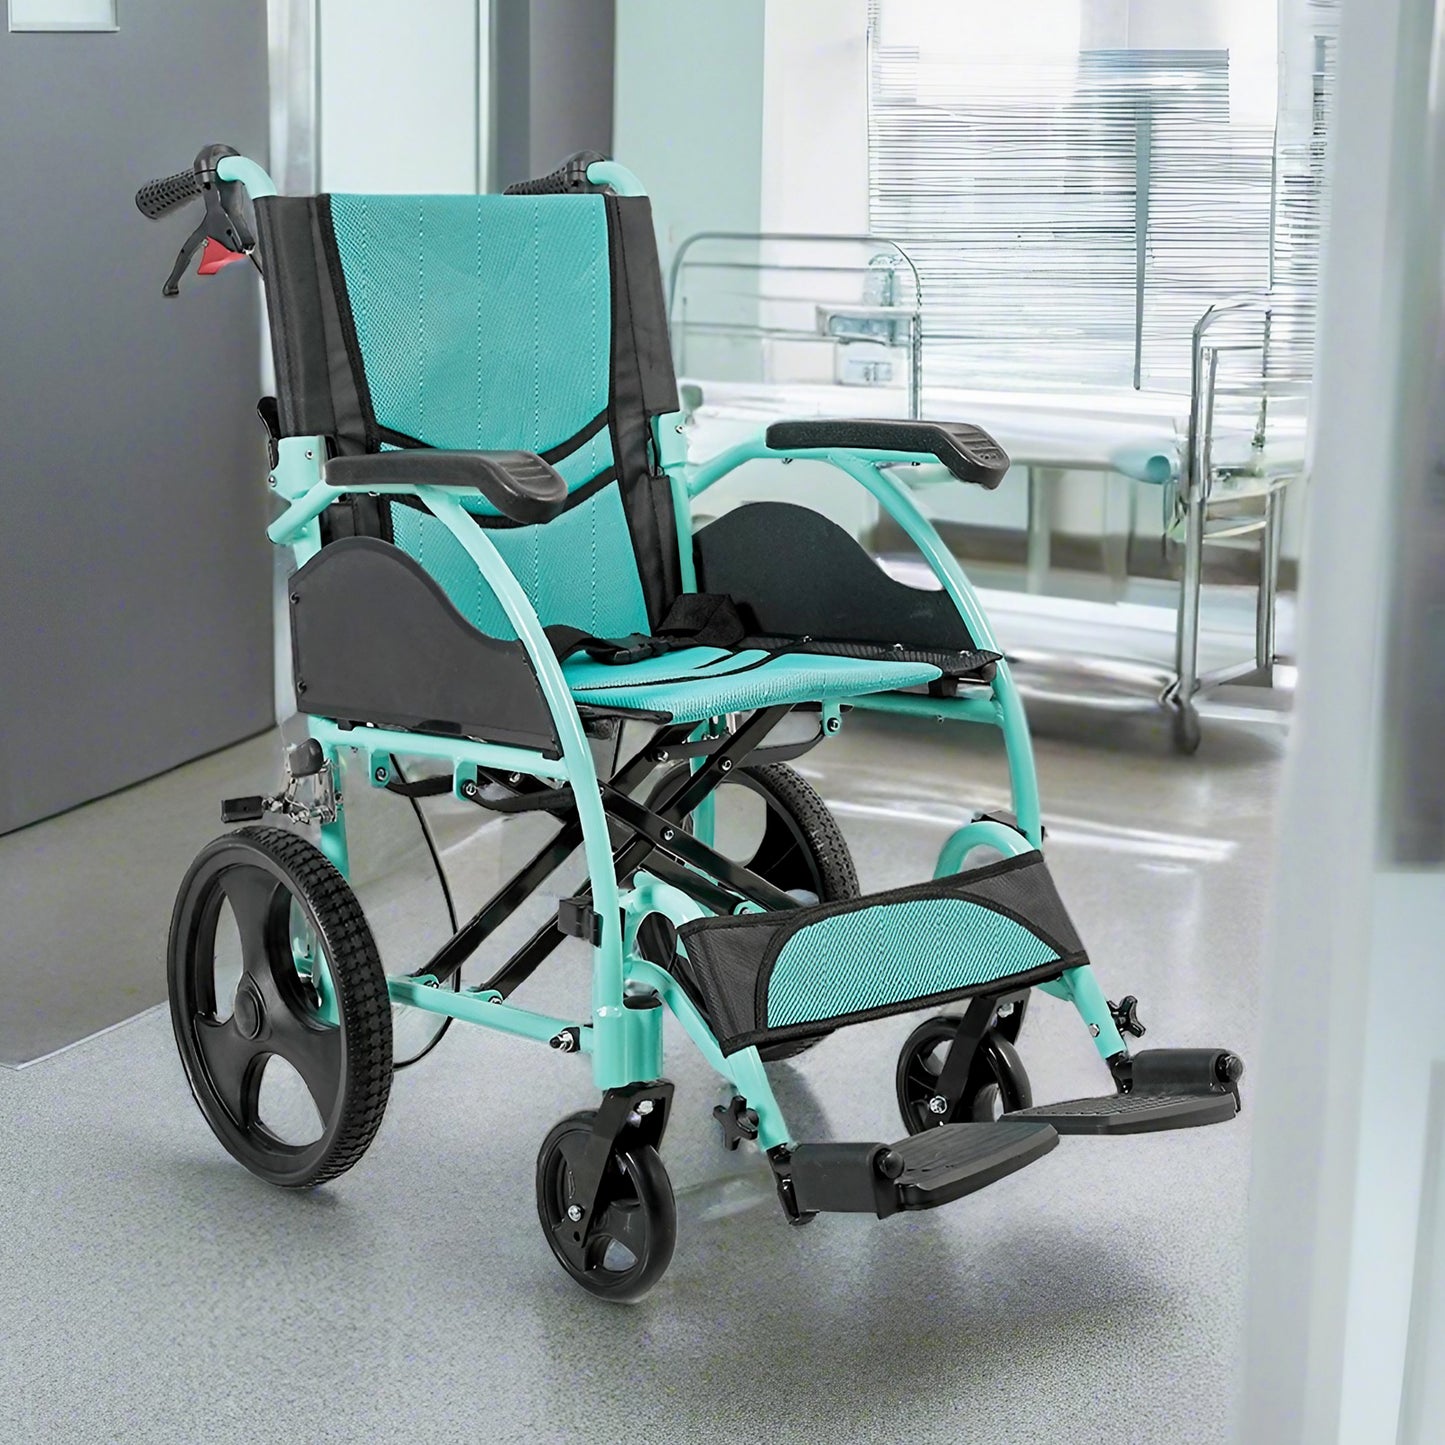 Care-Parents 介助用車椅子  折りたたみ車椅子 背折れタイプ アルミ製 折りたたみ軽量 組立不要  (CP-863BS)